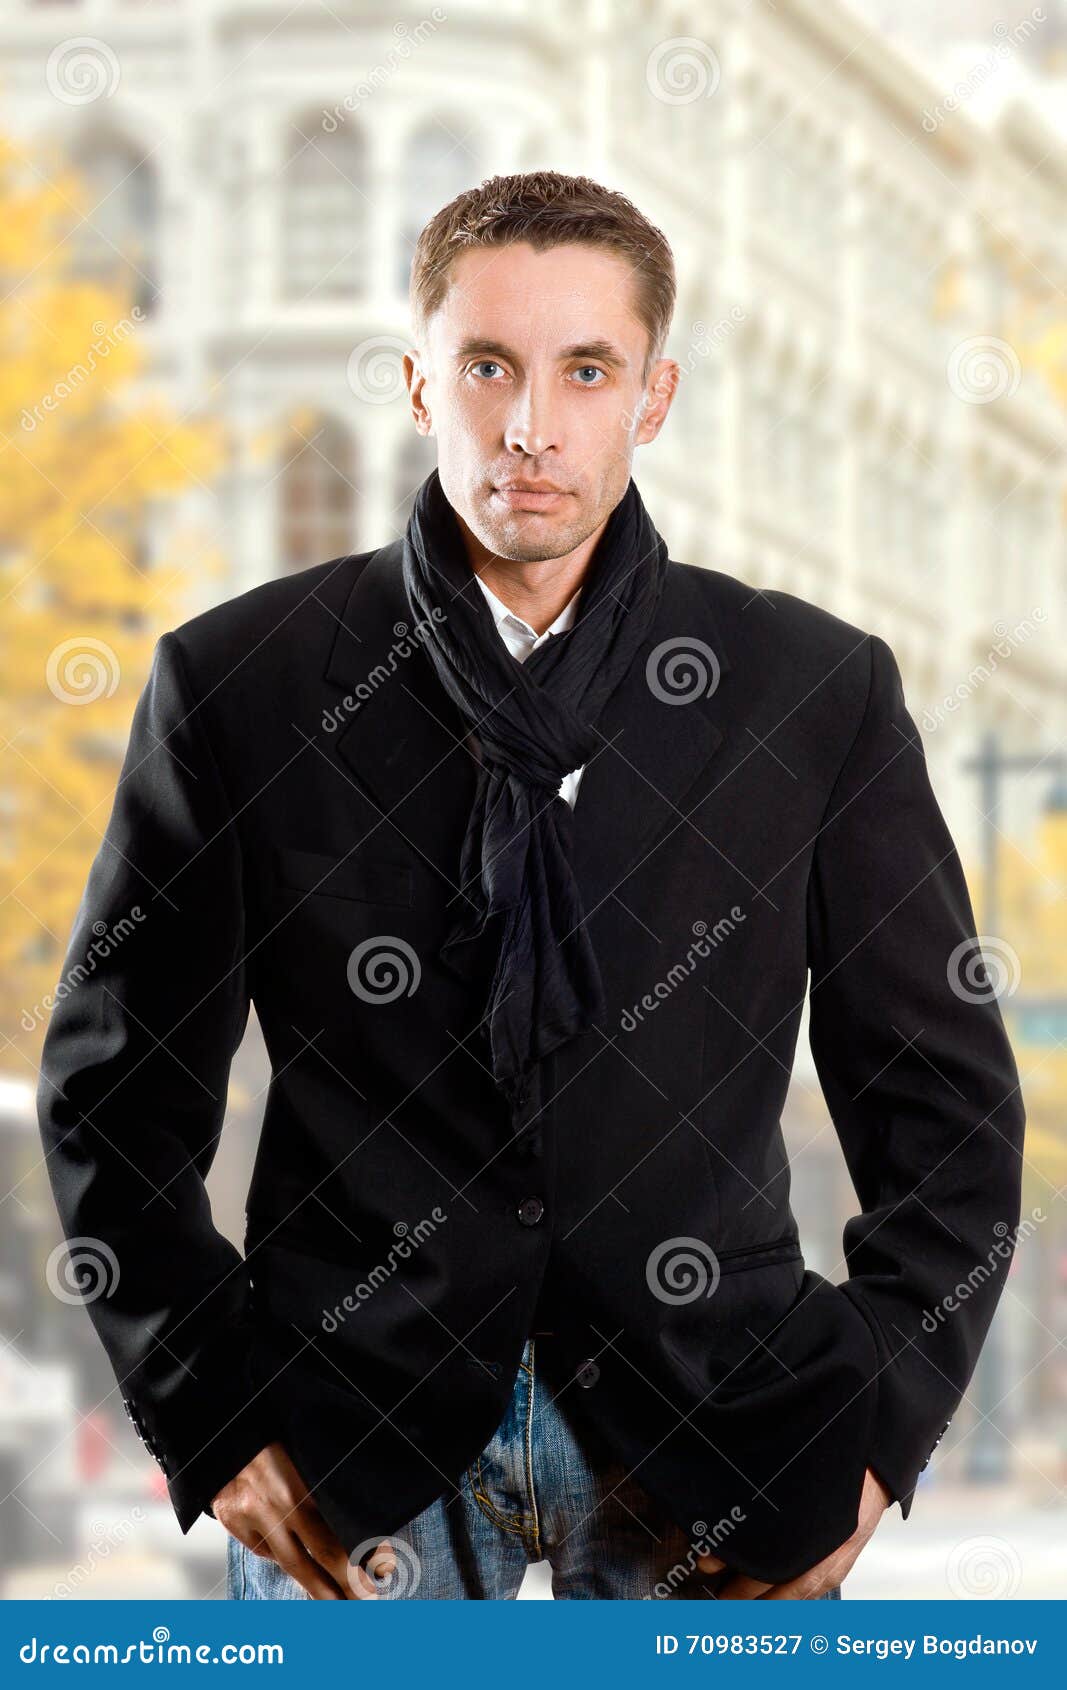 黑外套的严肃的人. 英俊的人画象黑外套的在城市街道上